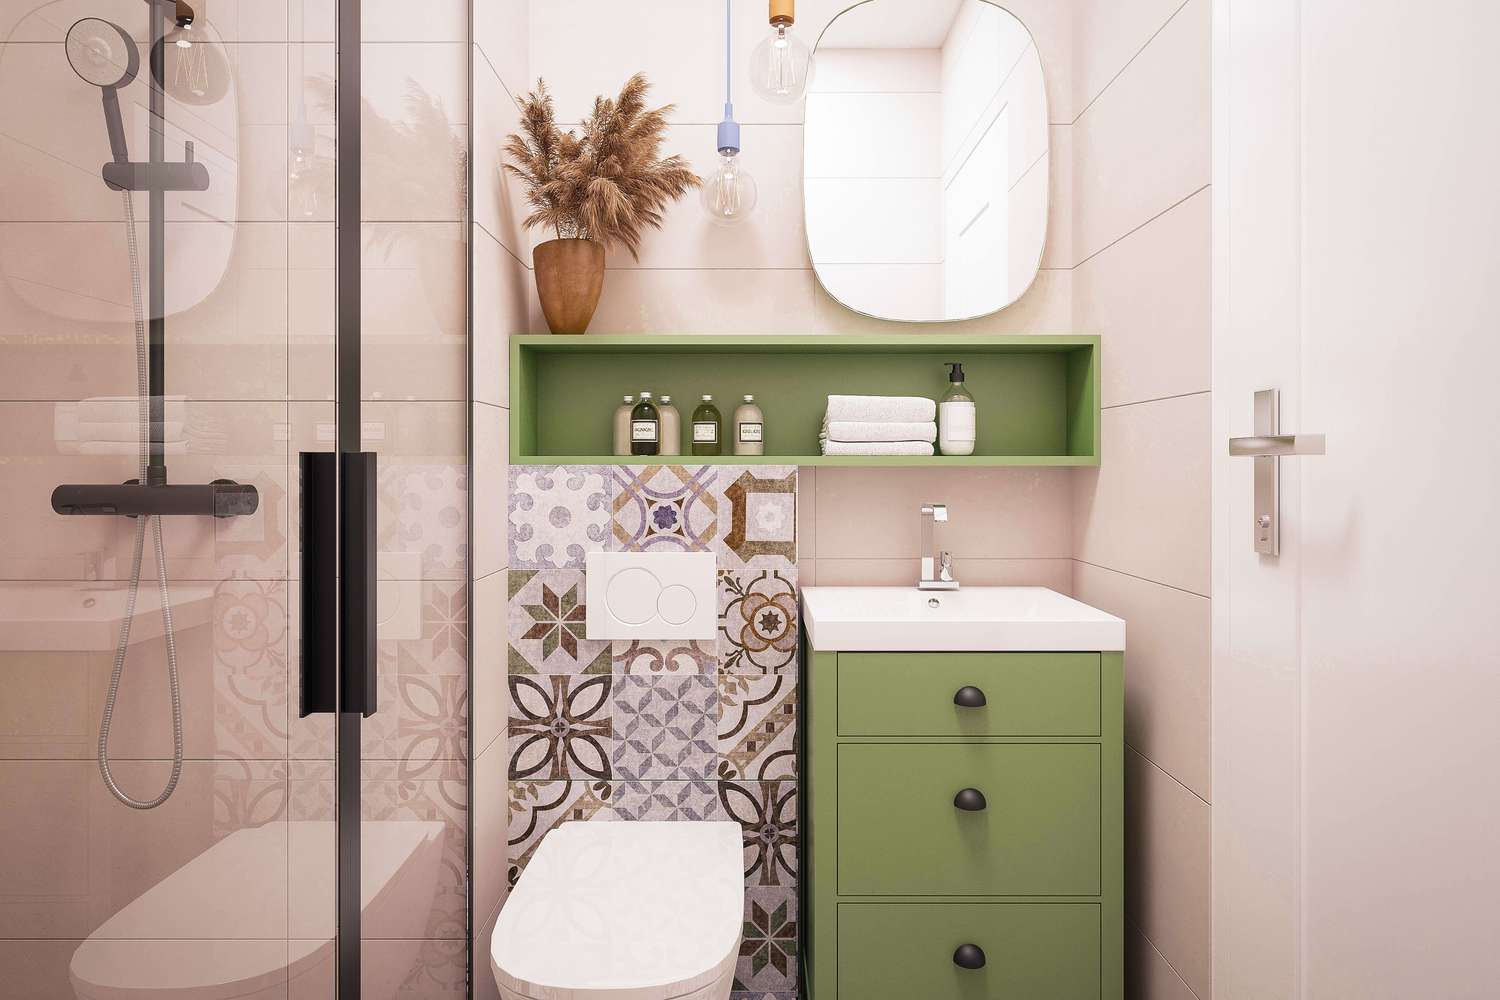 Kệ và tủ màu xanh lá nhạt làm điểm nhấn cho không gian nhà vệ sinh